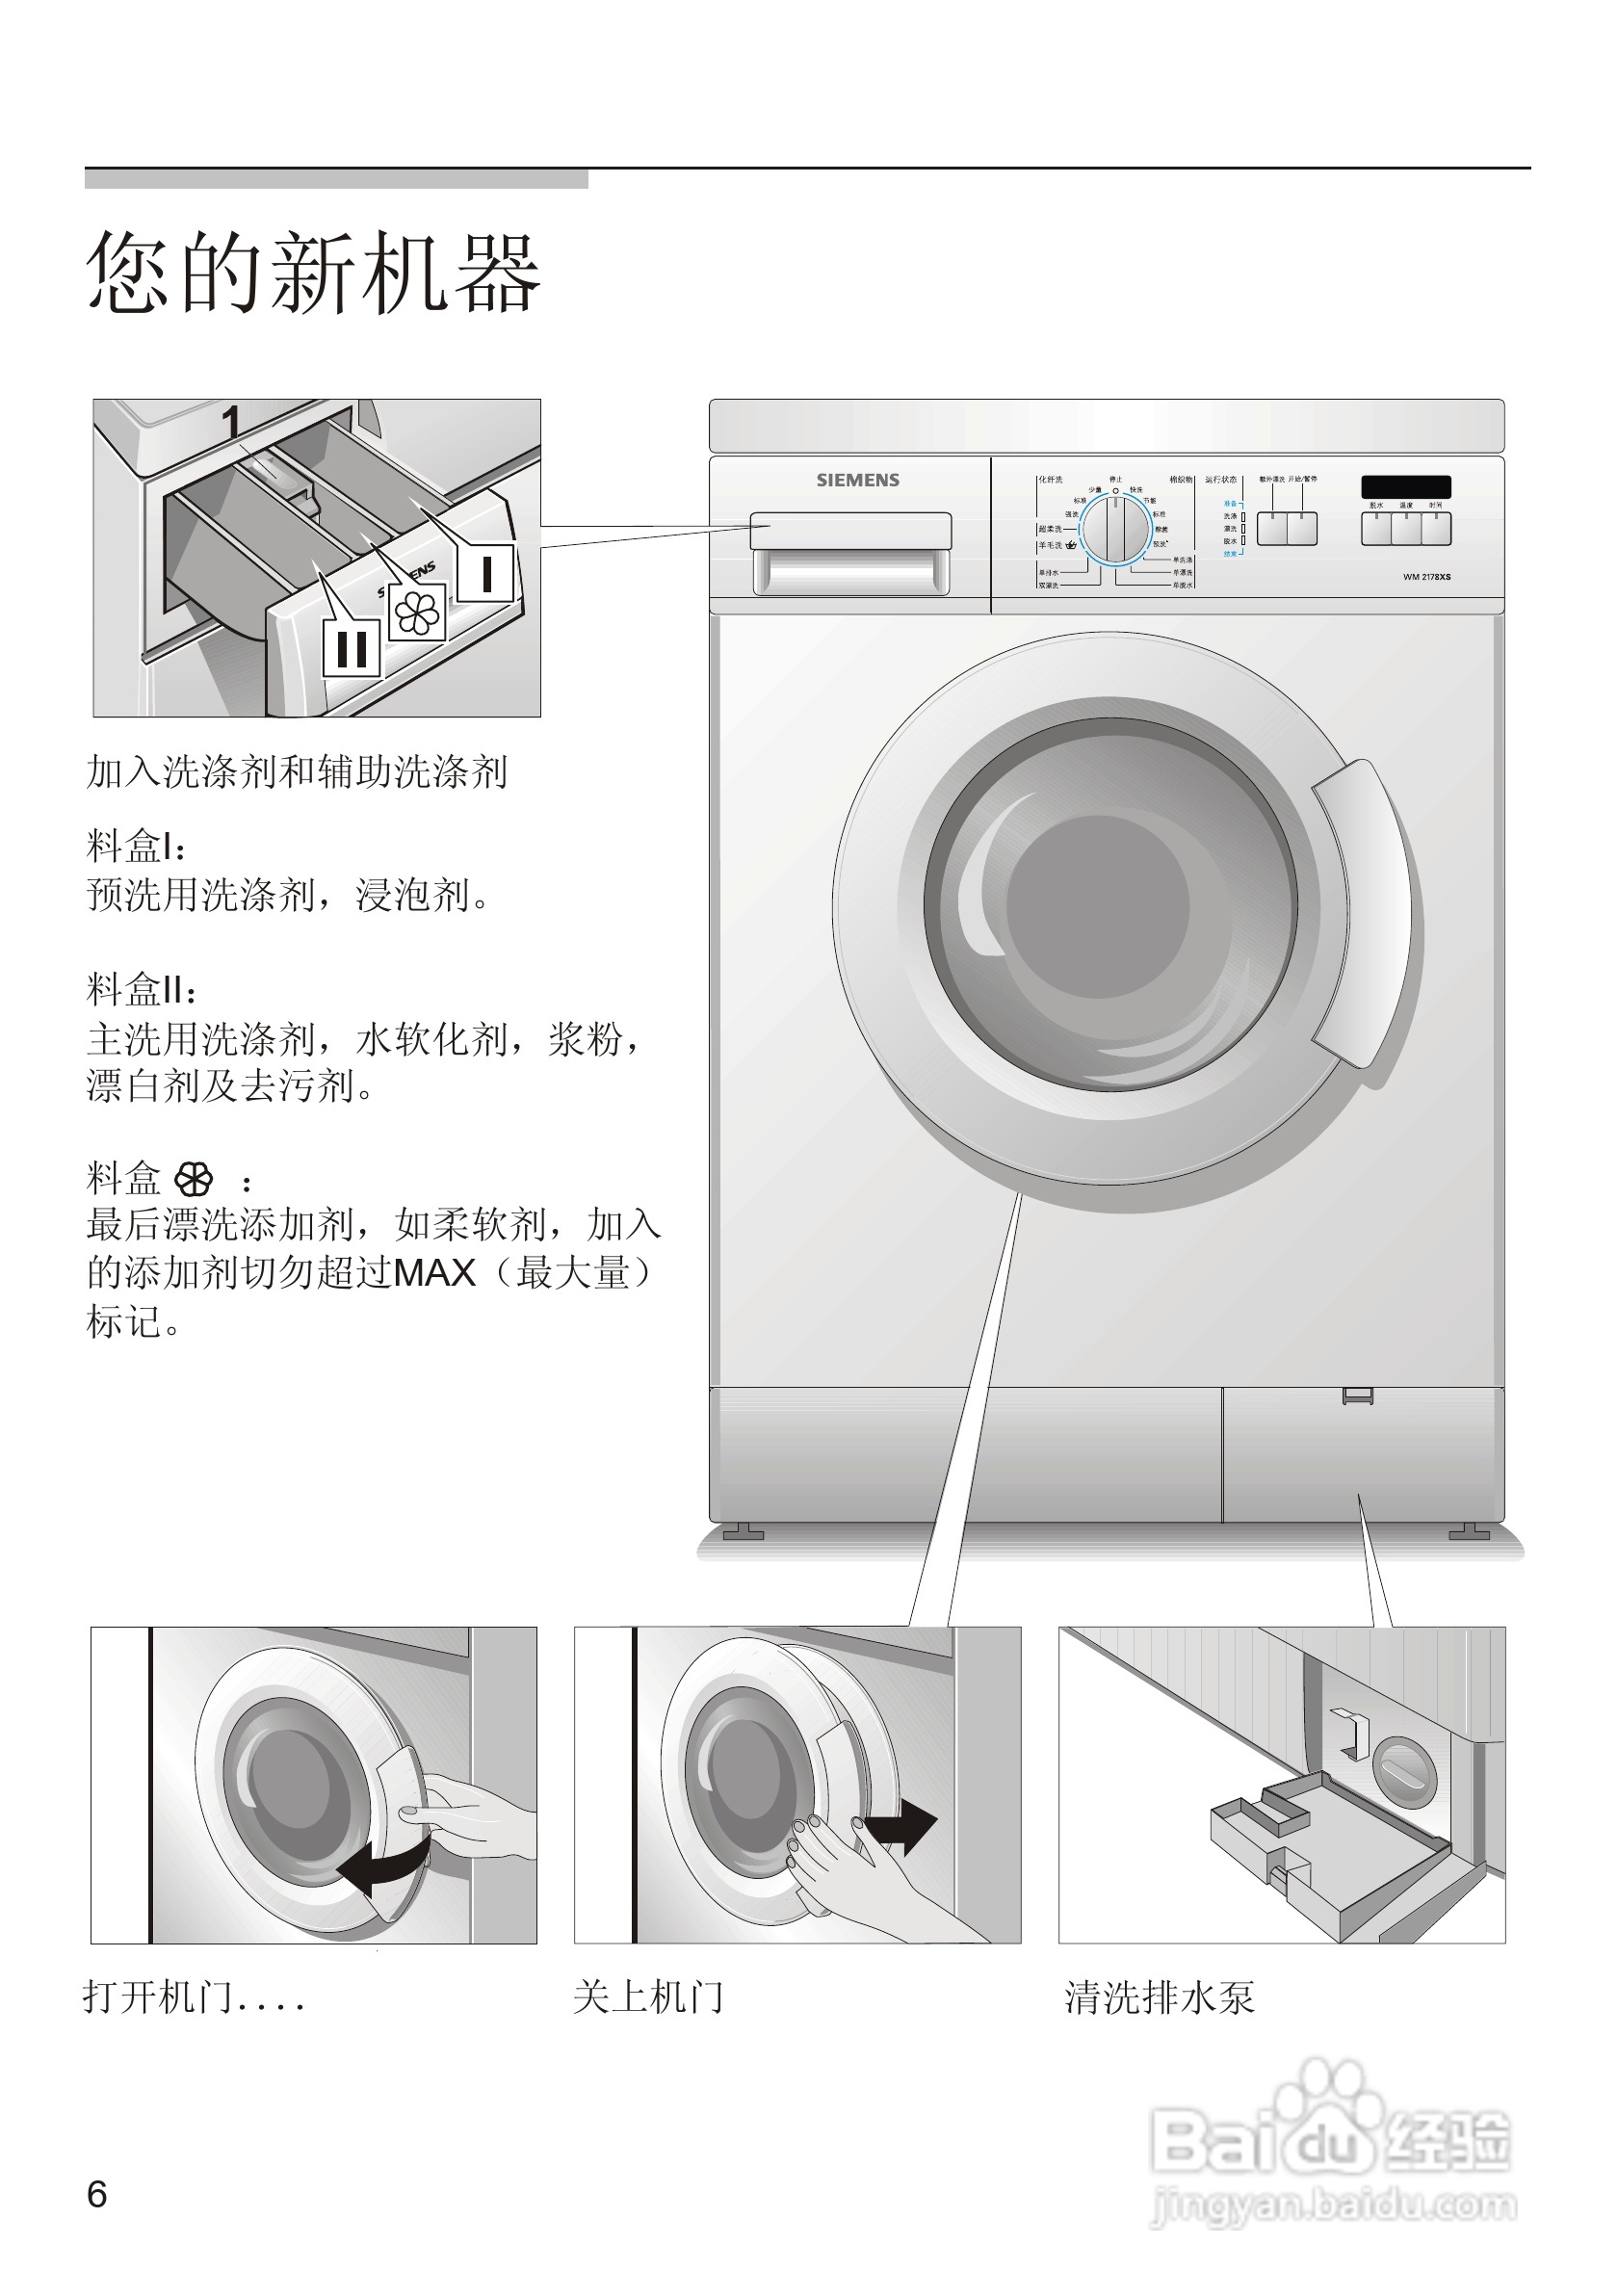 西门子wm2198xs洗衣机使用说明书:[1]